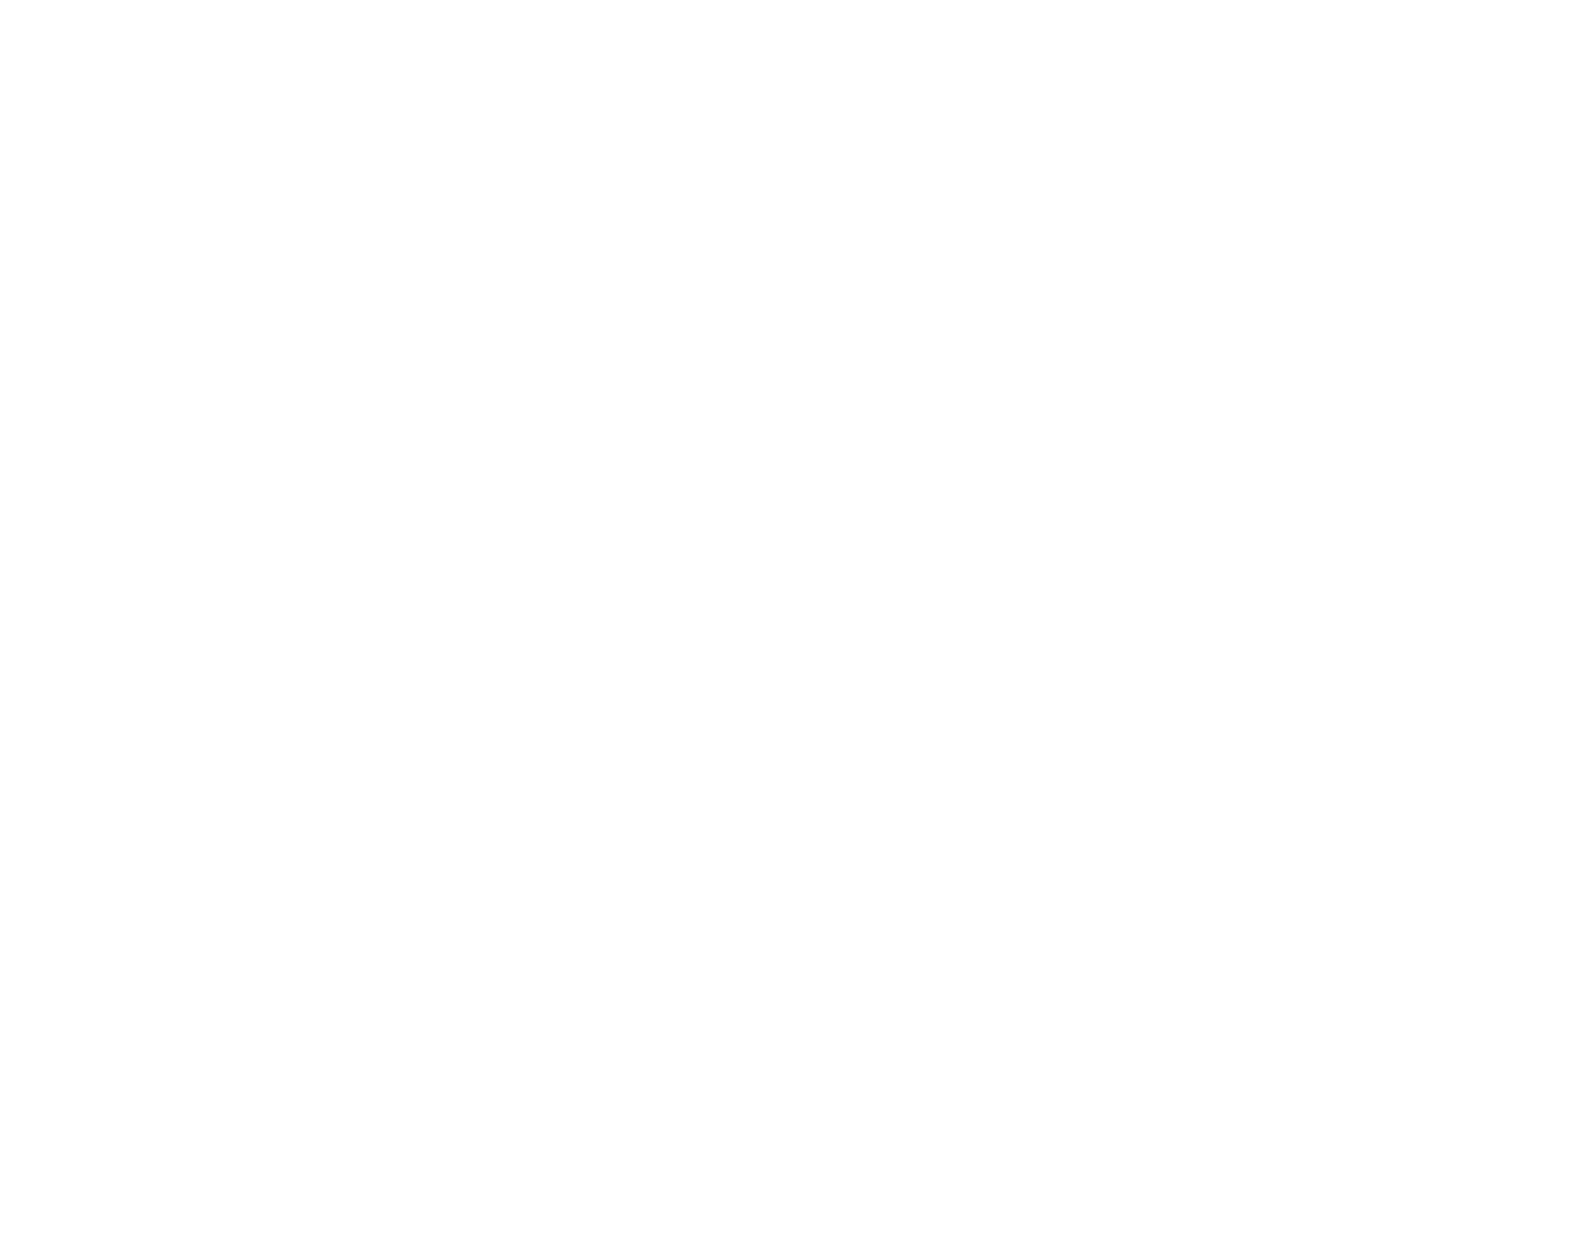 Wipro Logo groß für dunkle Hintergründe (transparentes PNG)